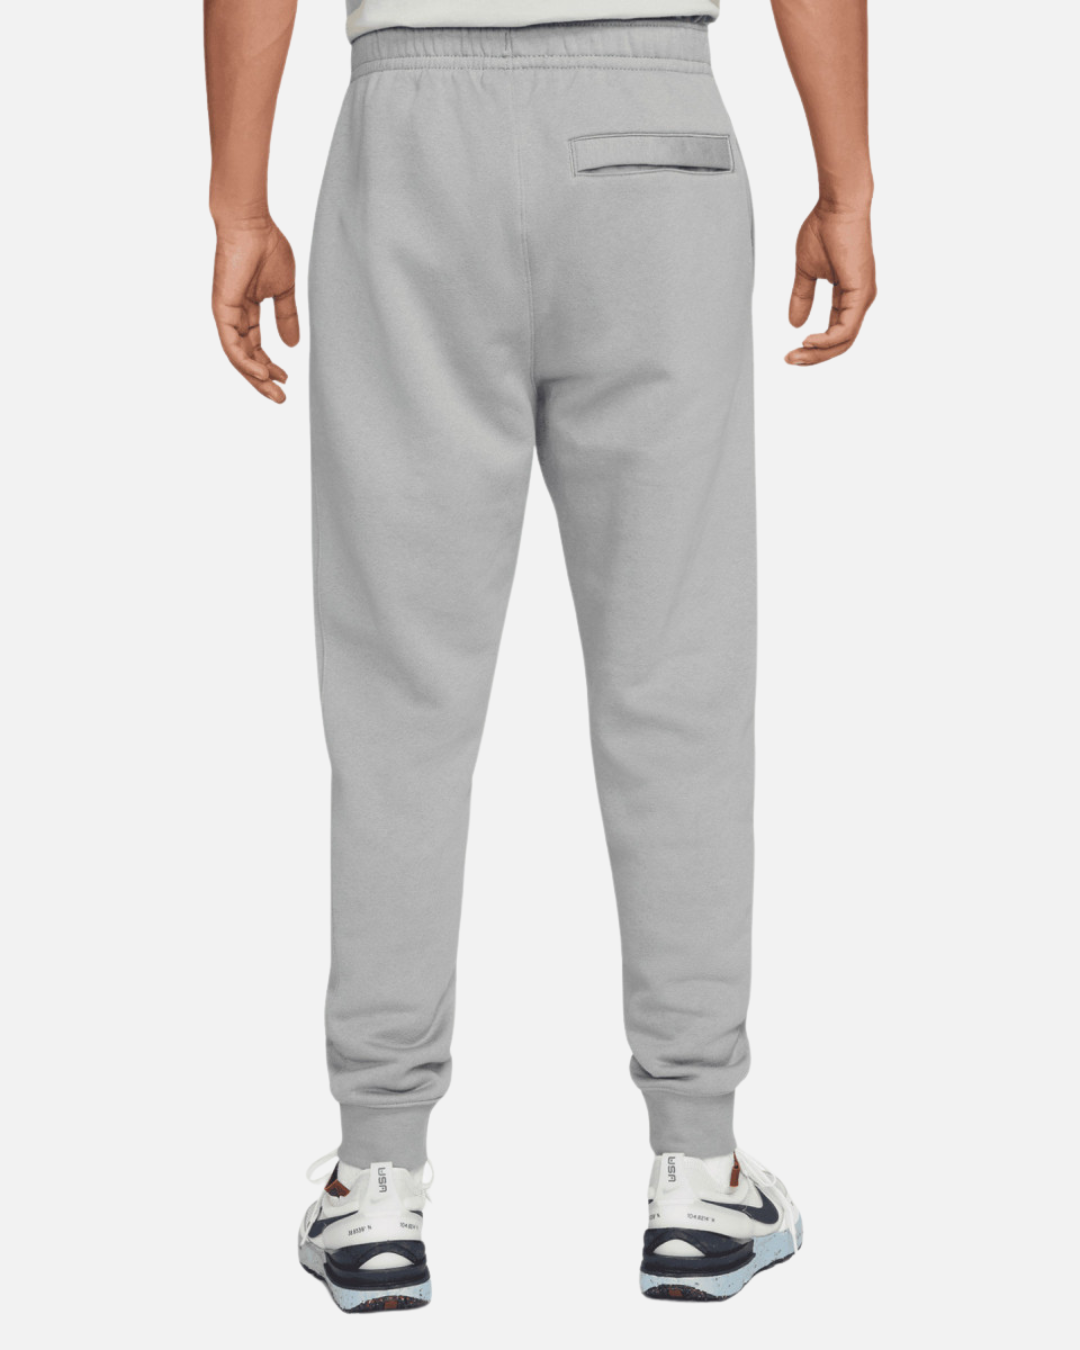 Pantaloni da jogging Nike Fleece - grigio chiaro